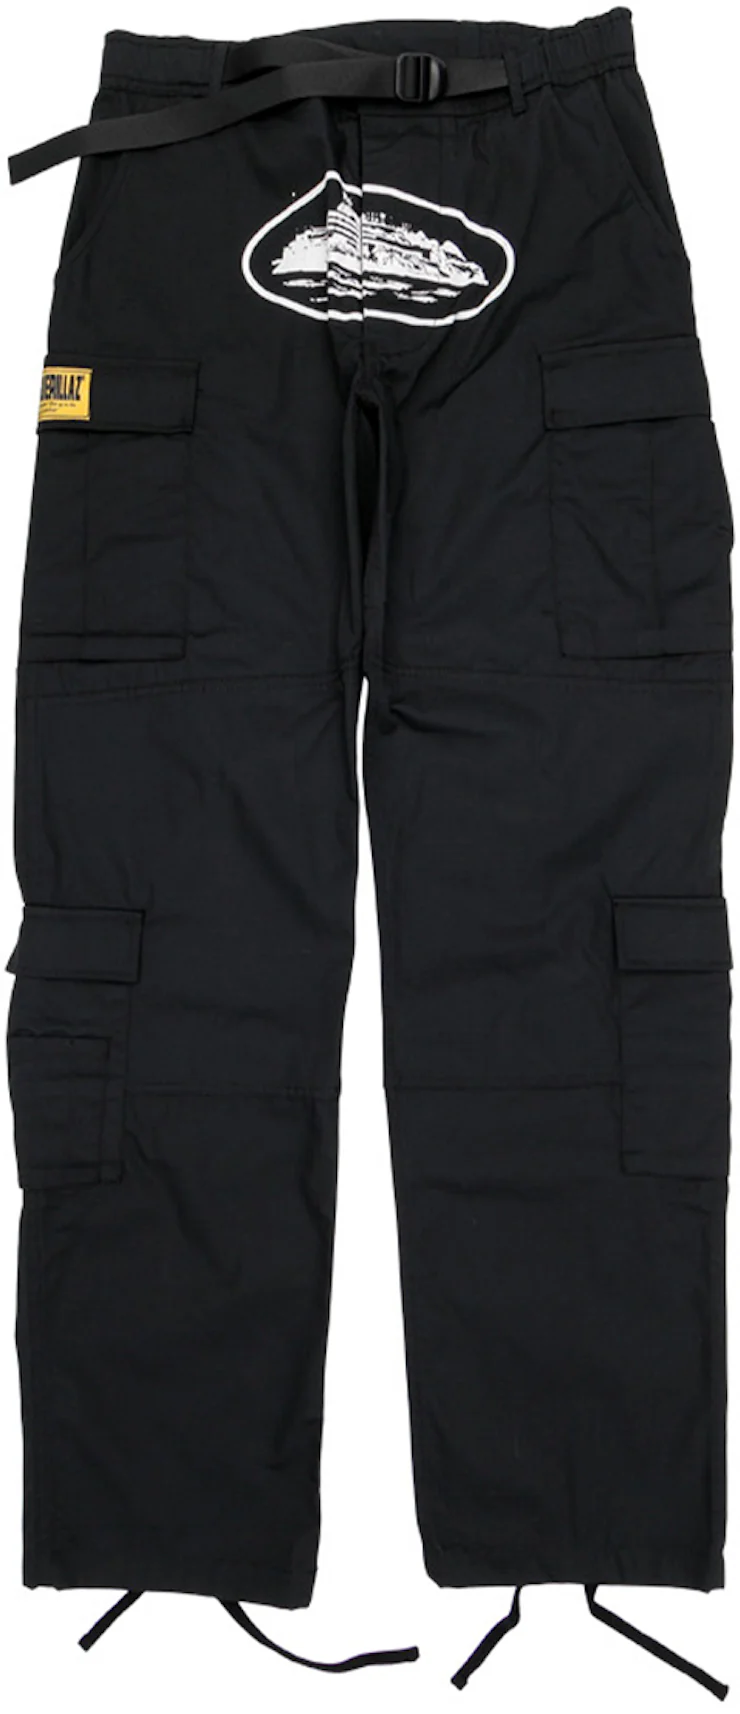 Pantalones cortos Corteiz Guerillaz 2022* Cargo en negro Hombre - SS22 - ES